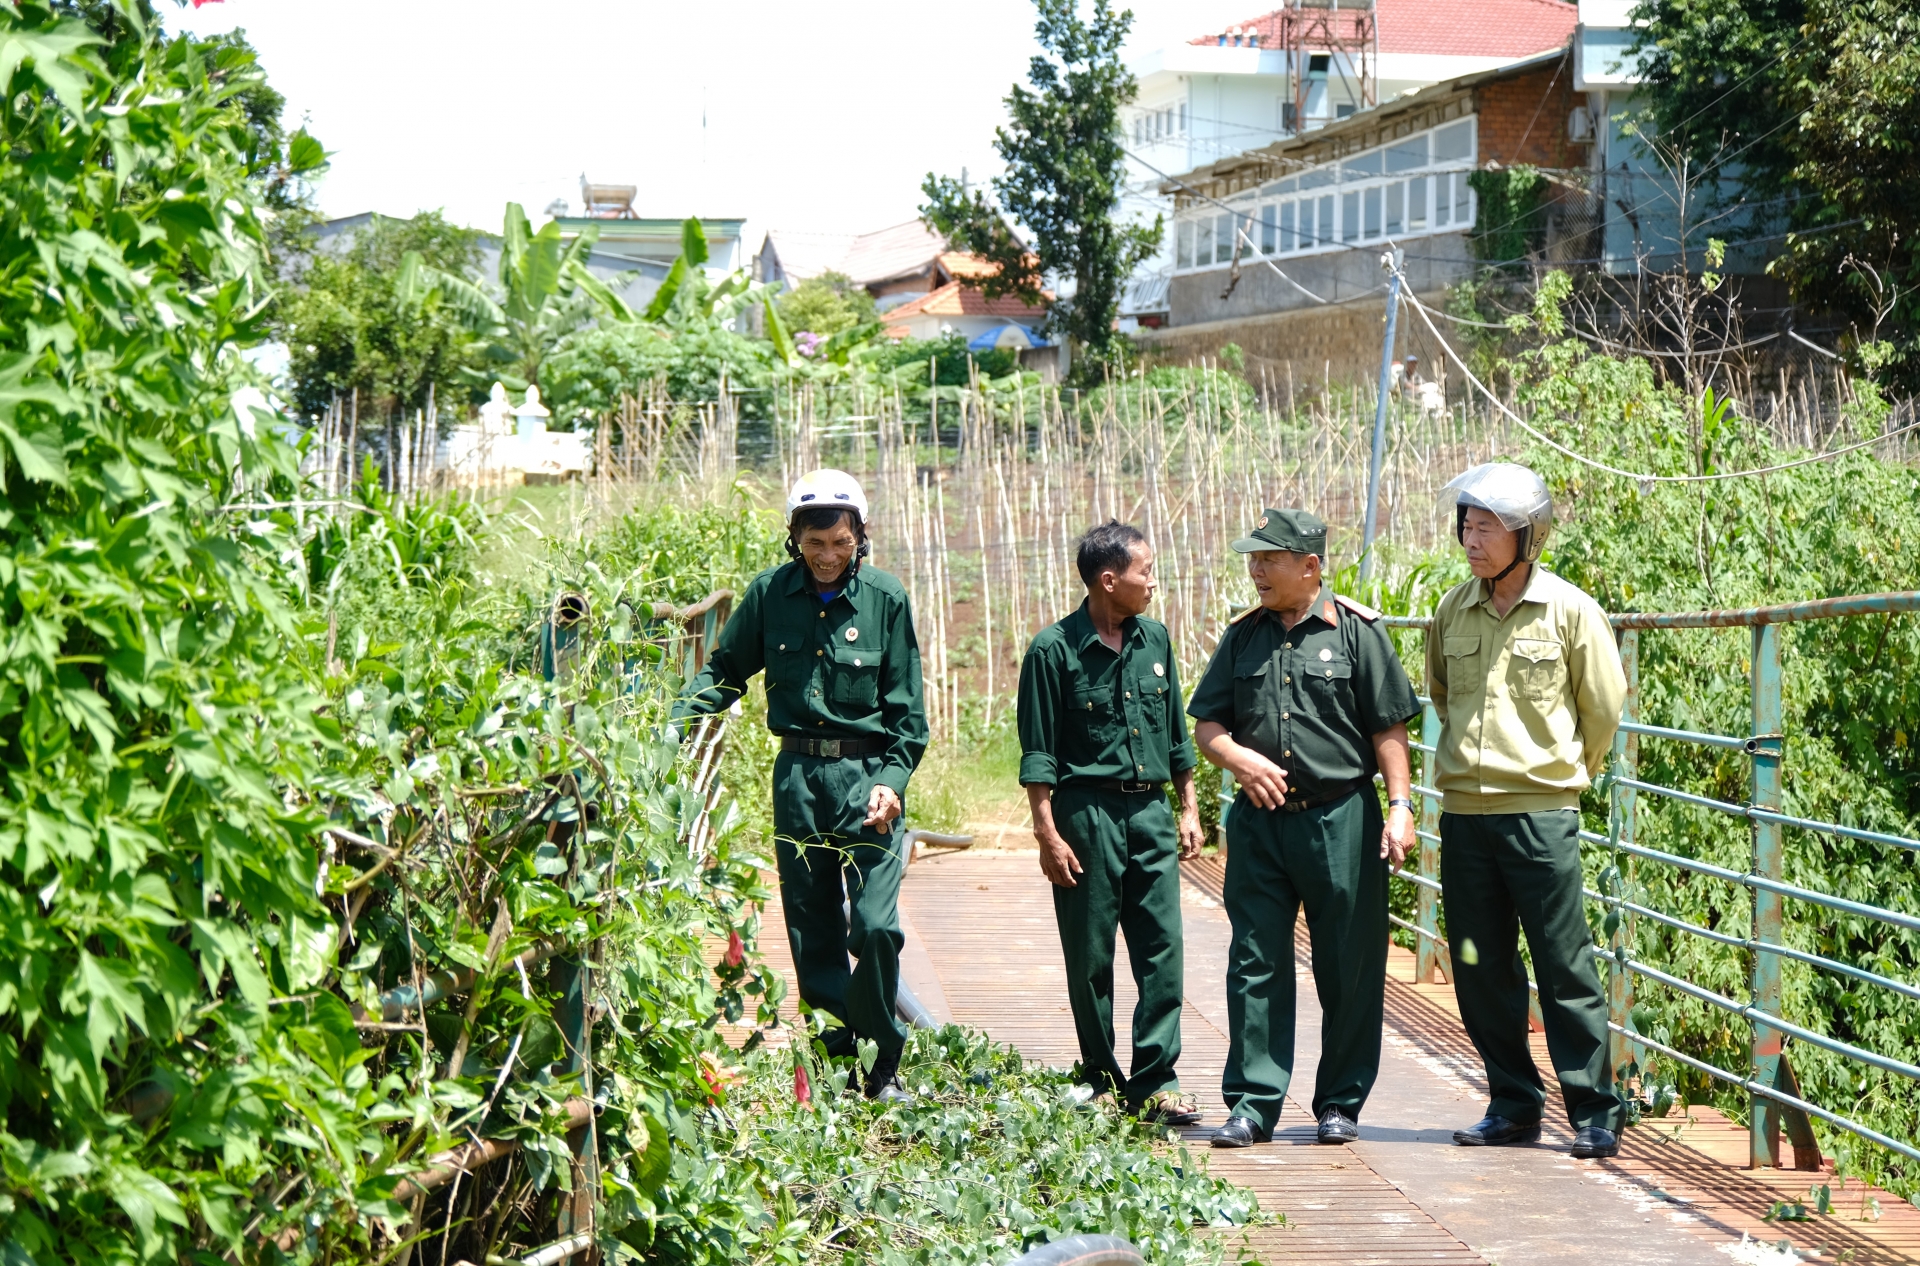 Cựu chiến binh Nghiêm Văn Báu tích cực vận động người dân chung tay với chính quyền sửa chữa cầu, xóa cầu khỉ, cầu tạm tại cơ sở